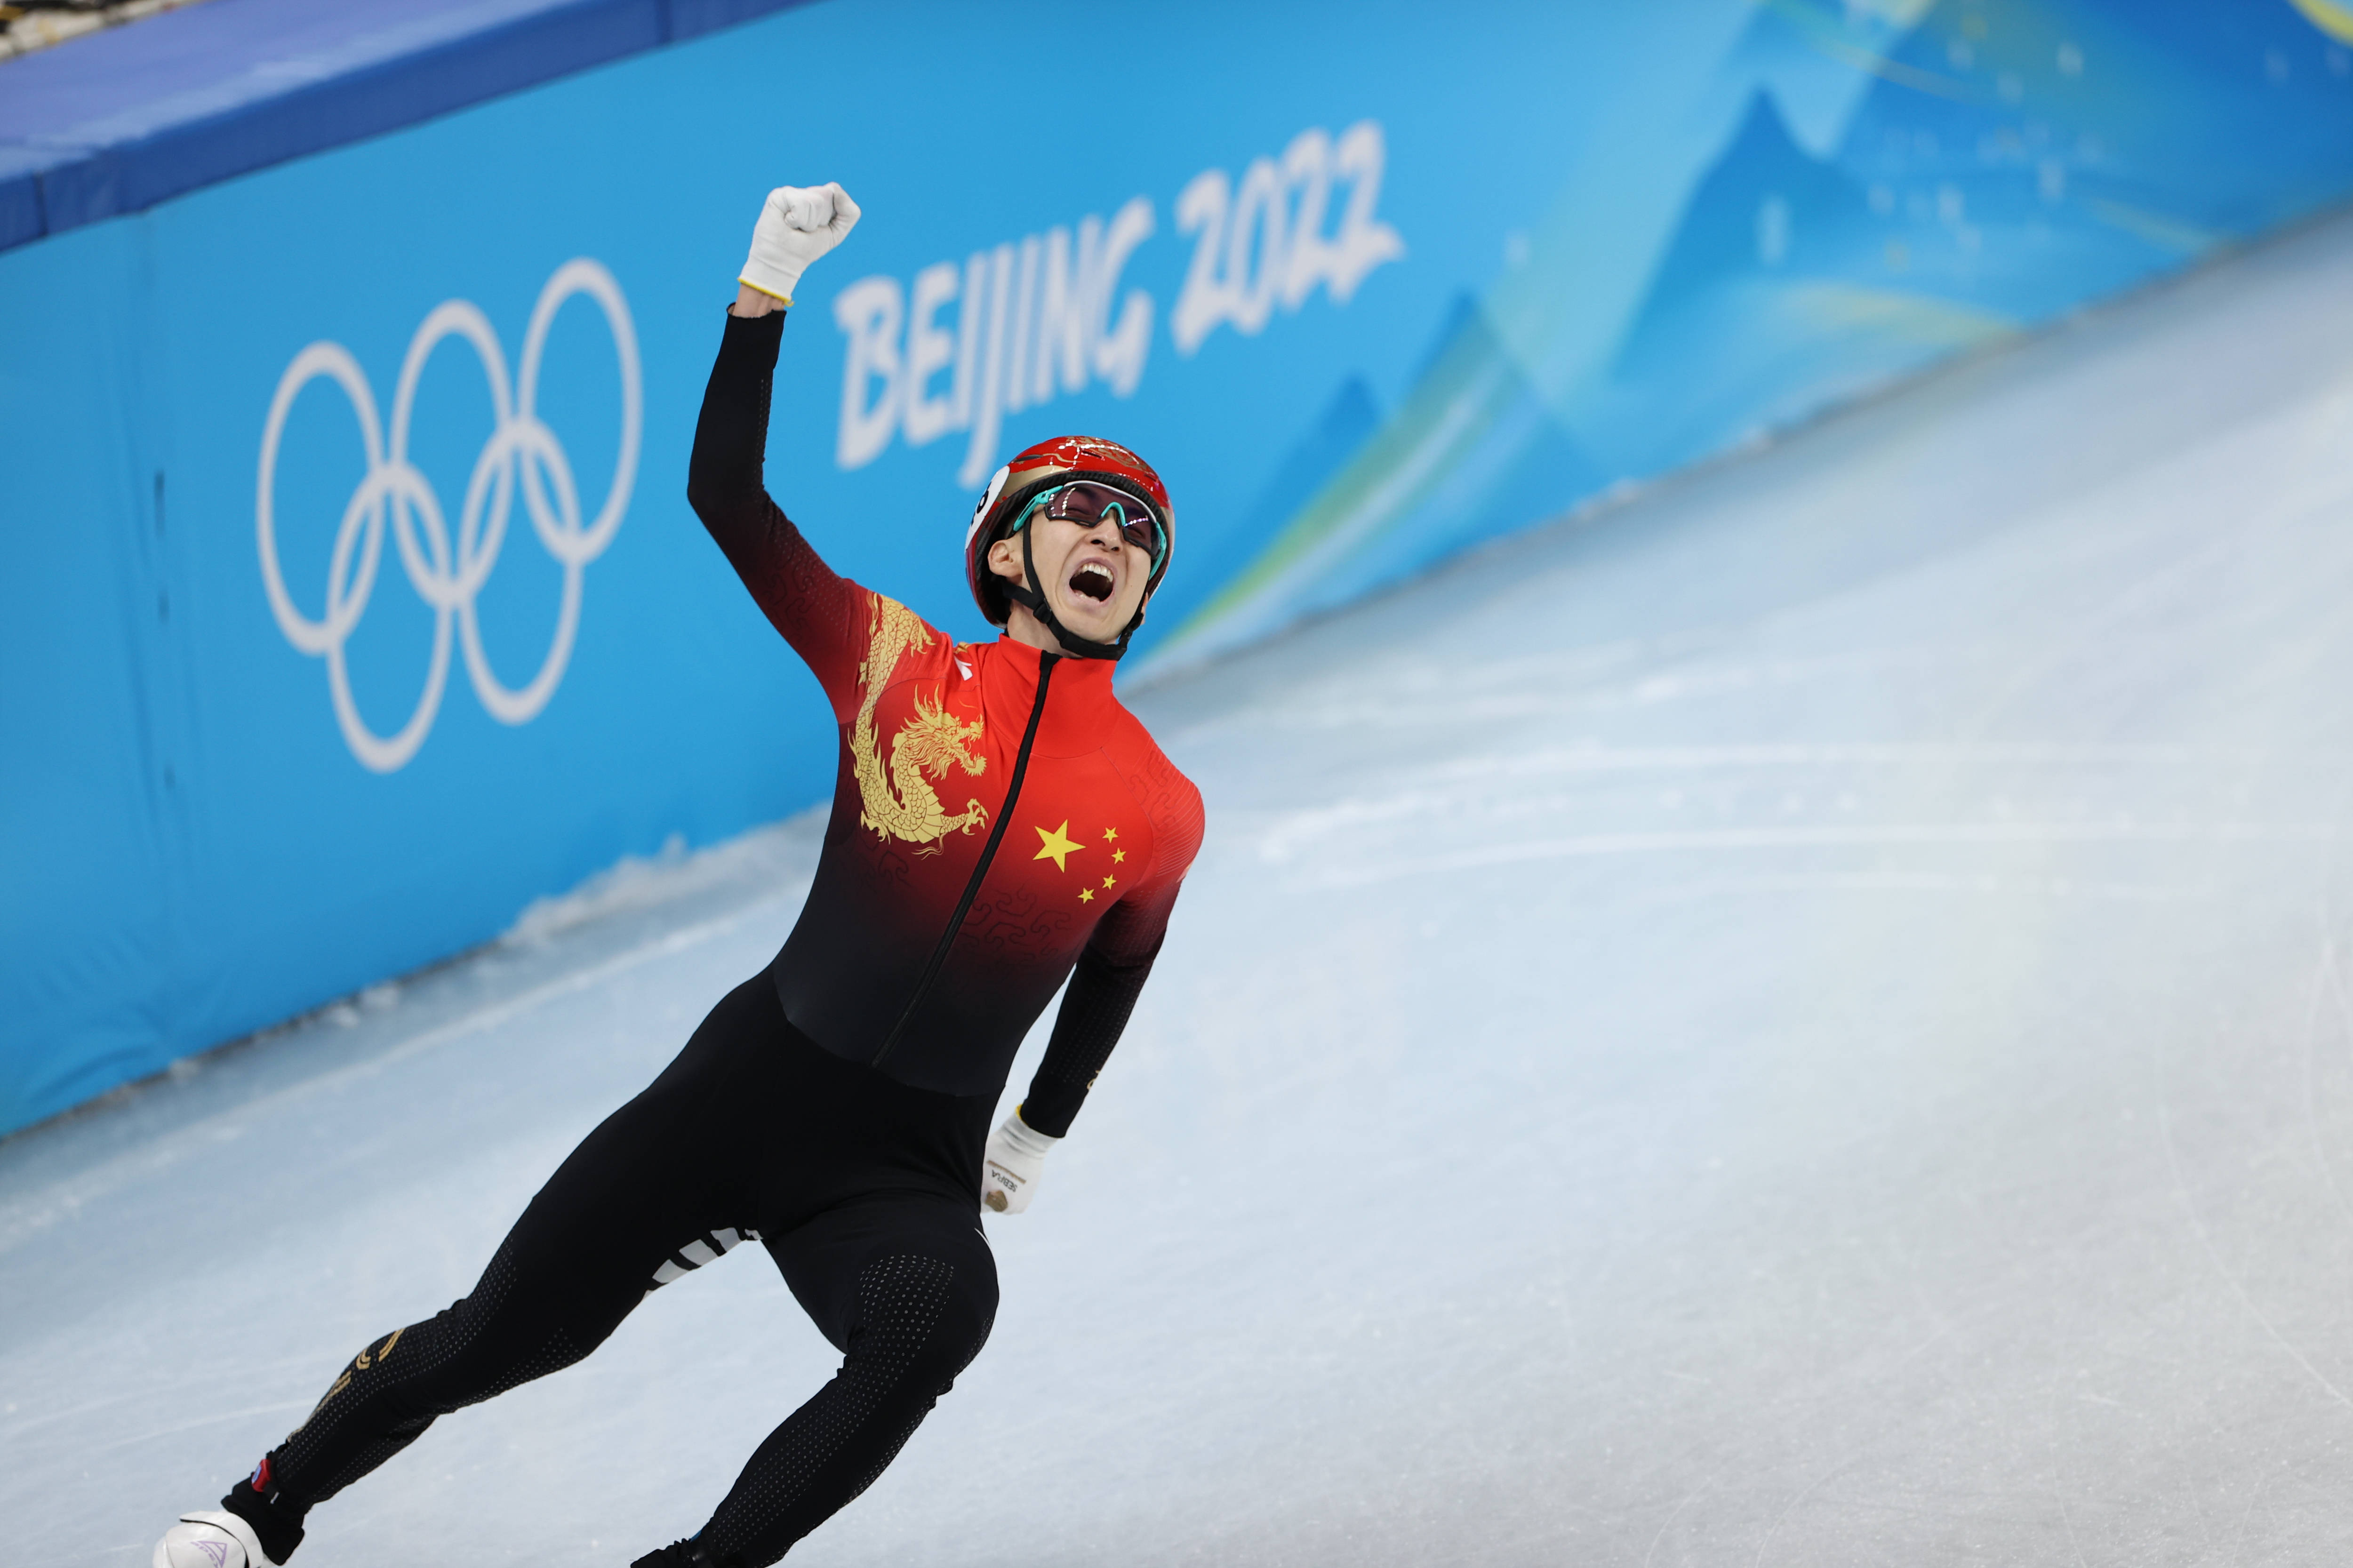 杨磊 摄当日,在首都体育馆举行的北京2022年冬奥会短道速滑项目混合